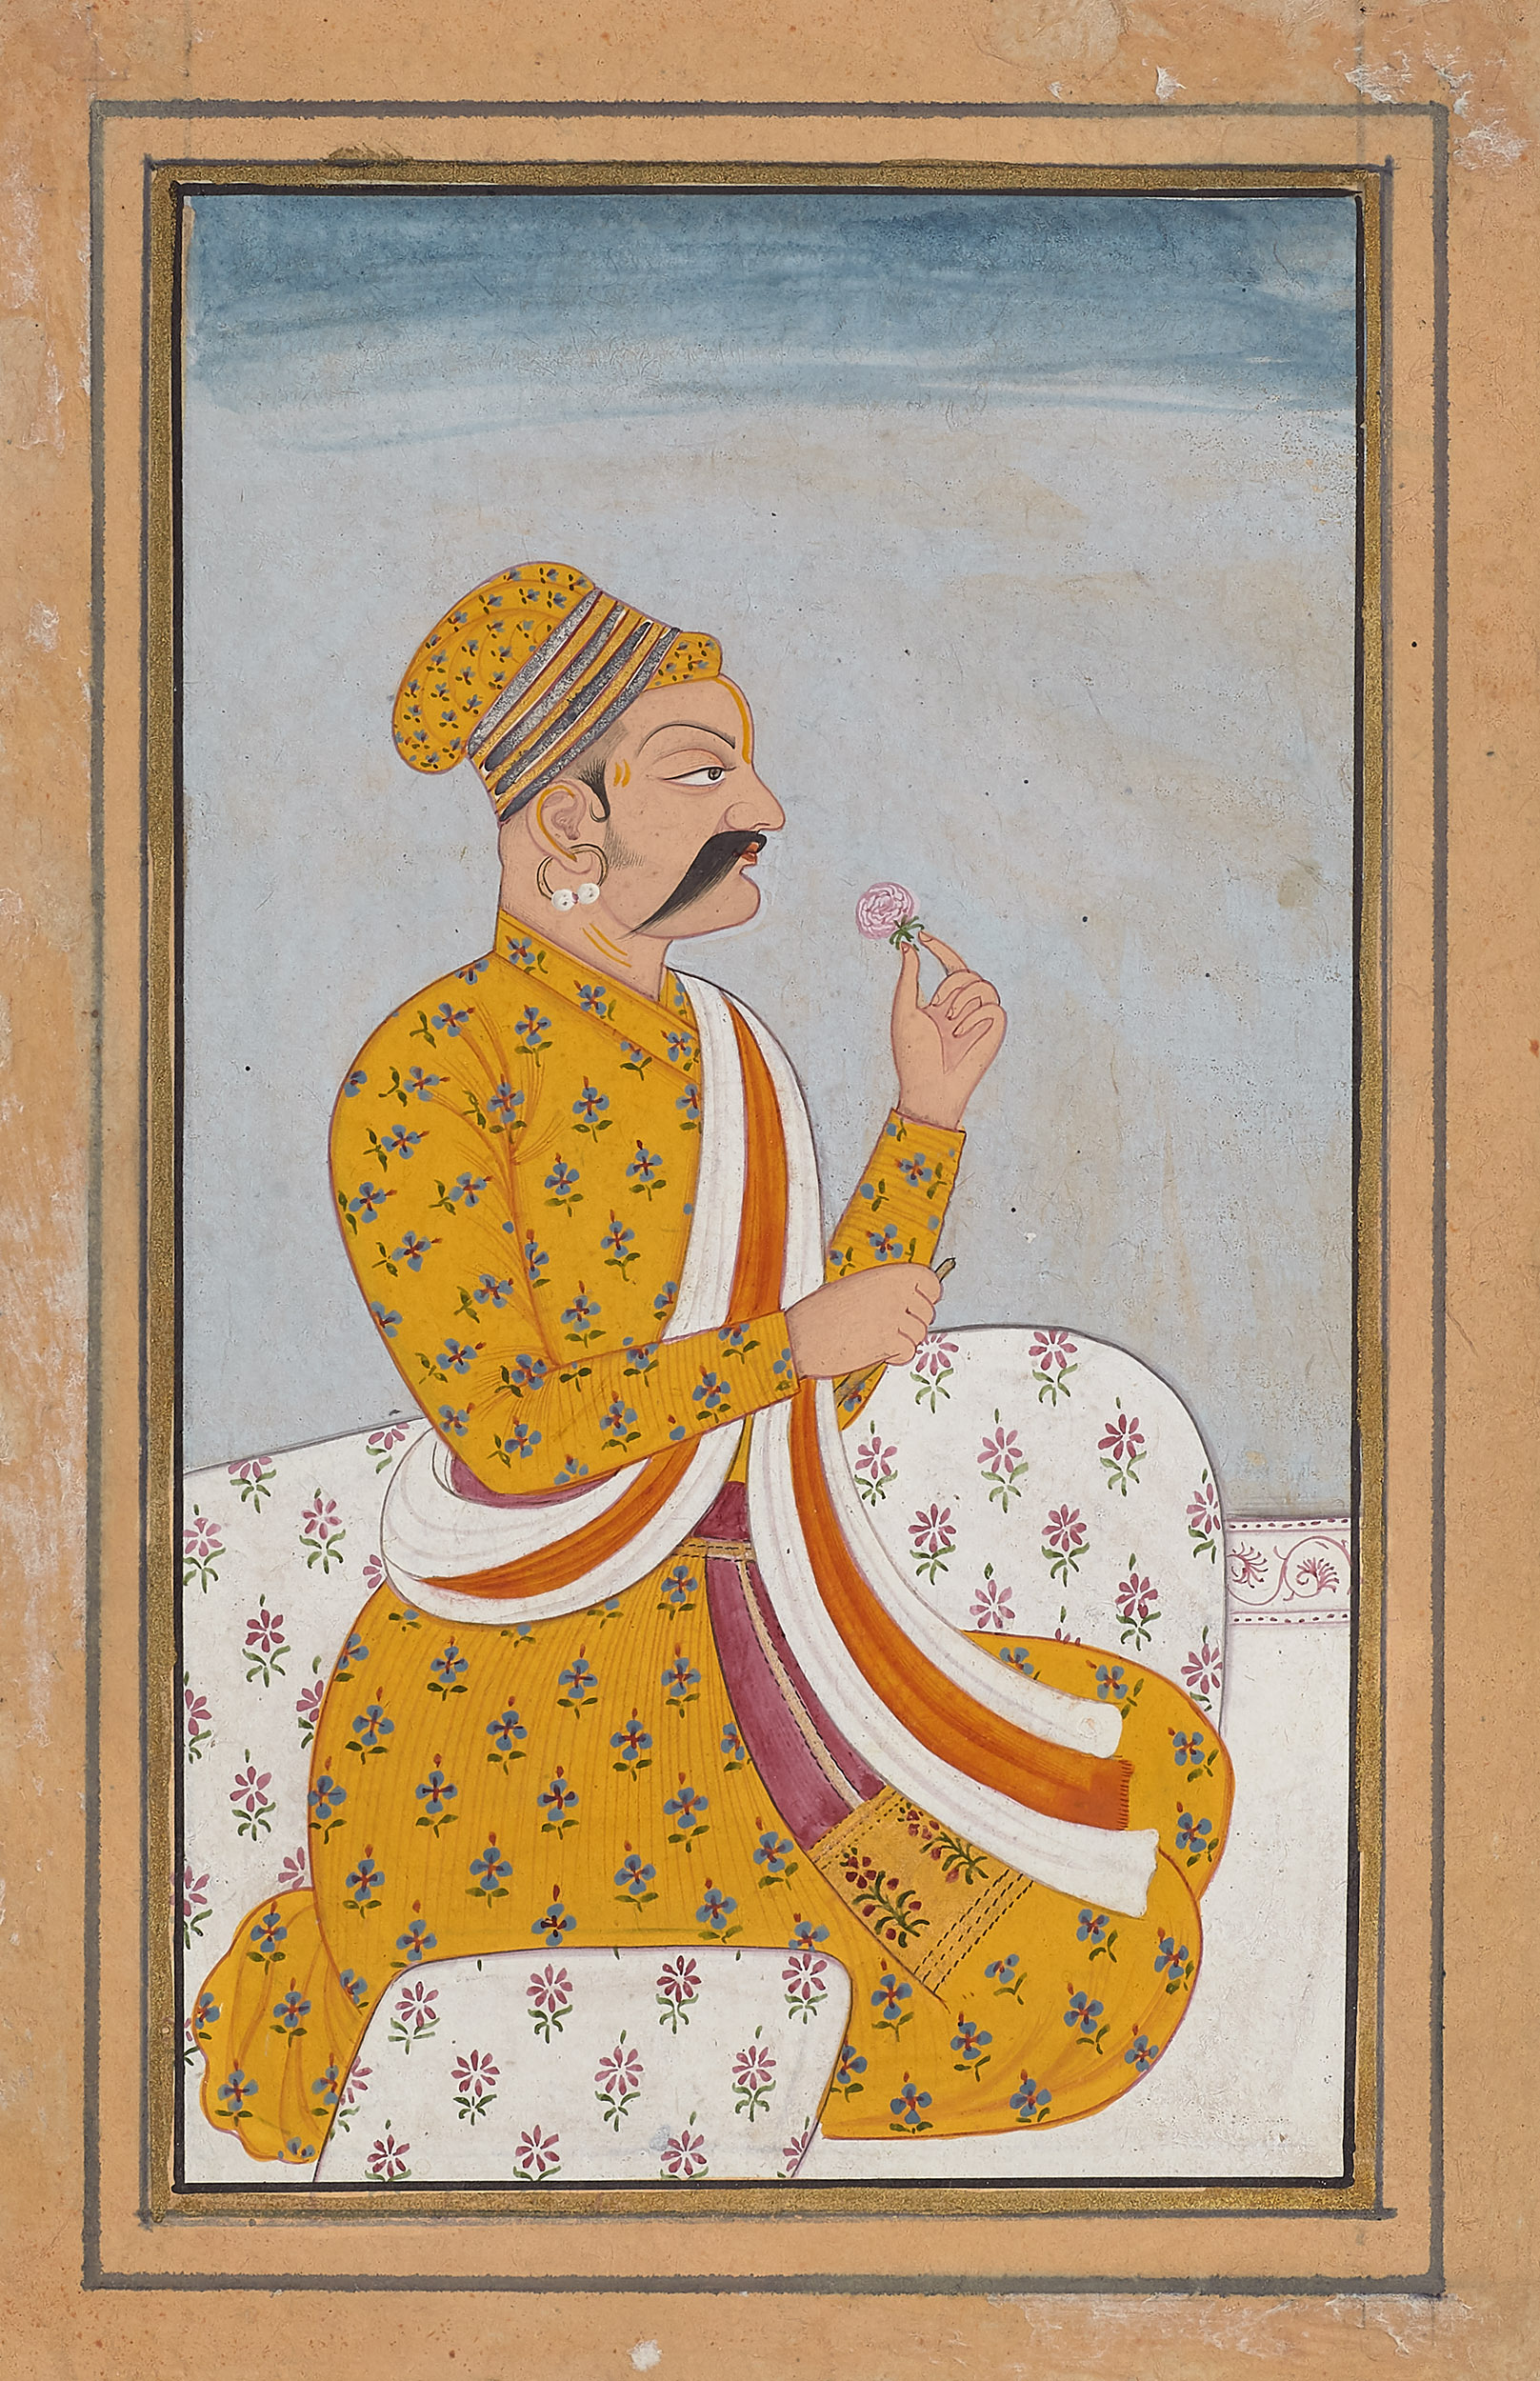 Raja Man Singh